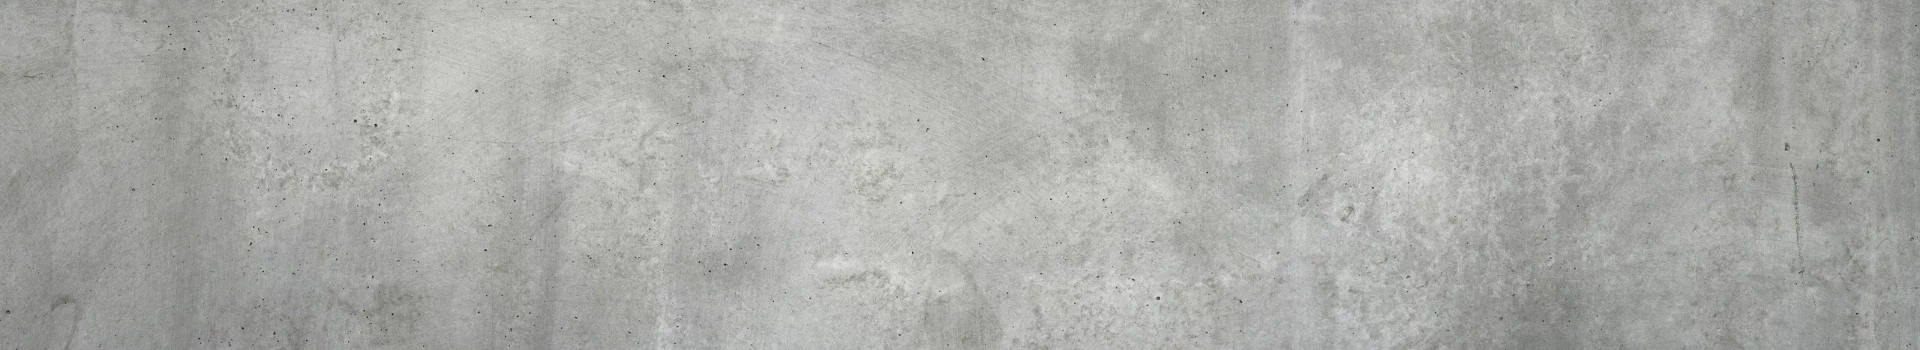 betonowa powierzchnia